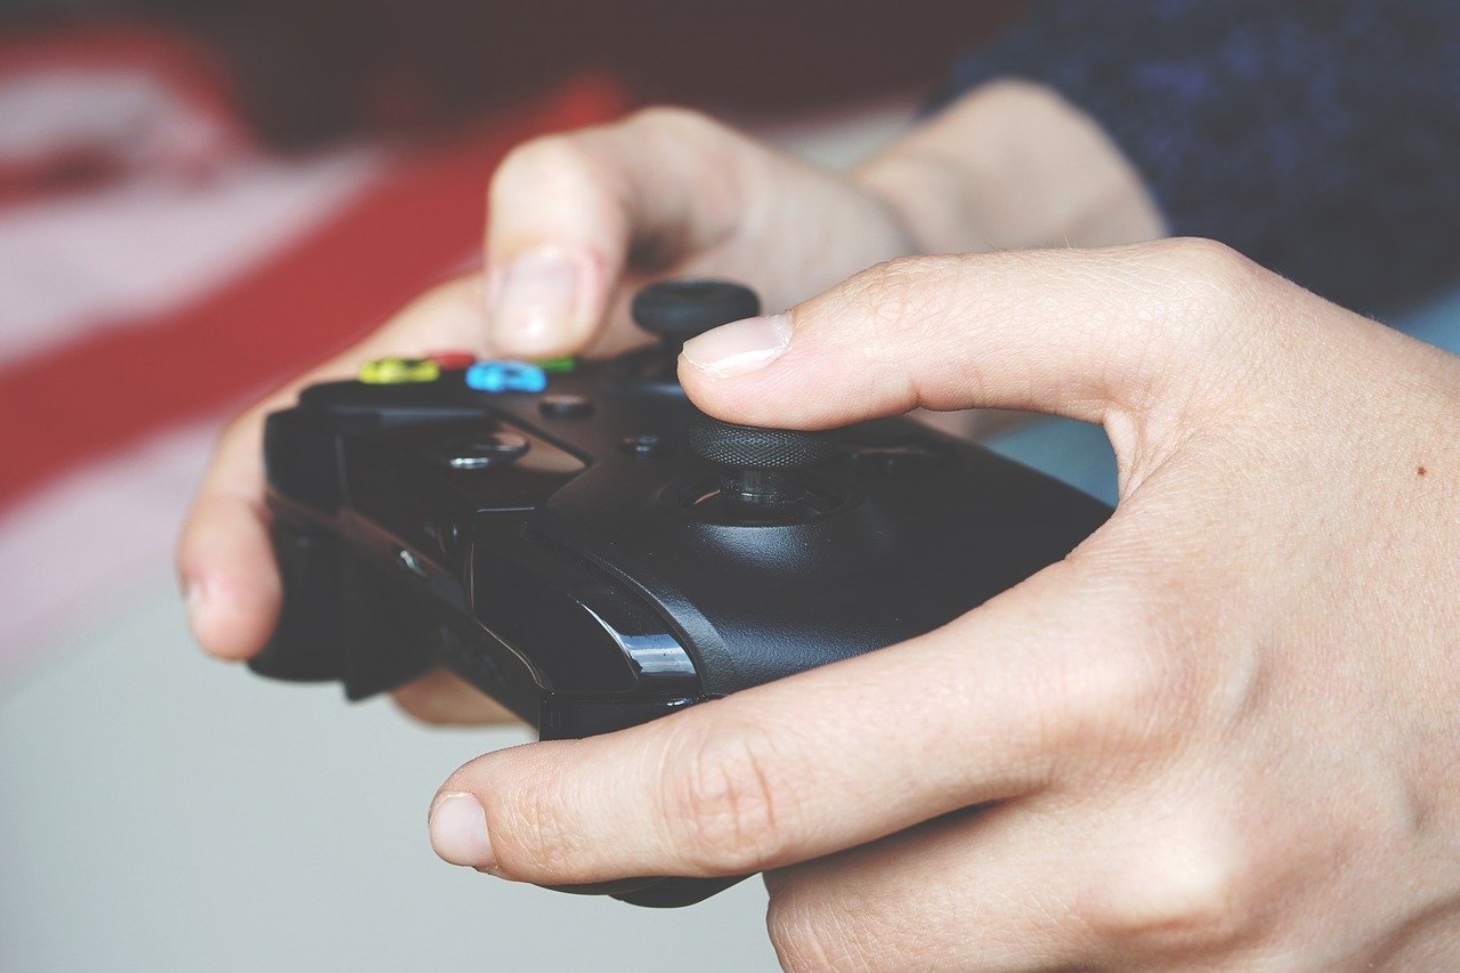 Estudo discute relação entre videogames e bem-estar | Jornal da Orla